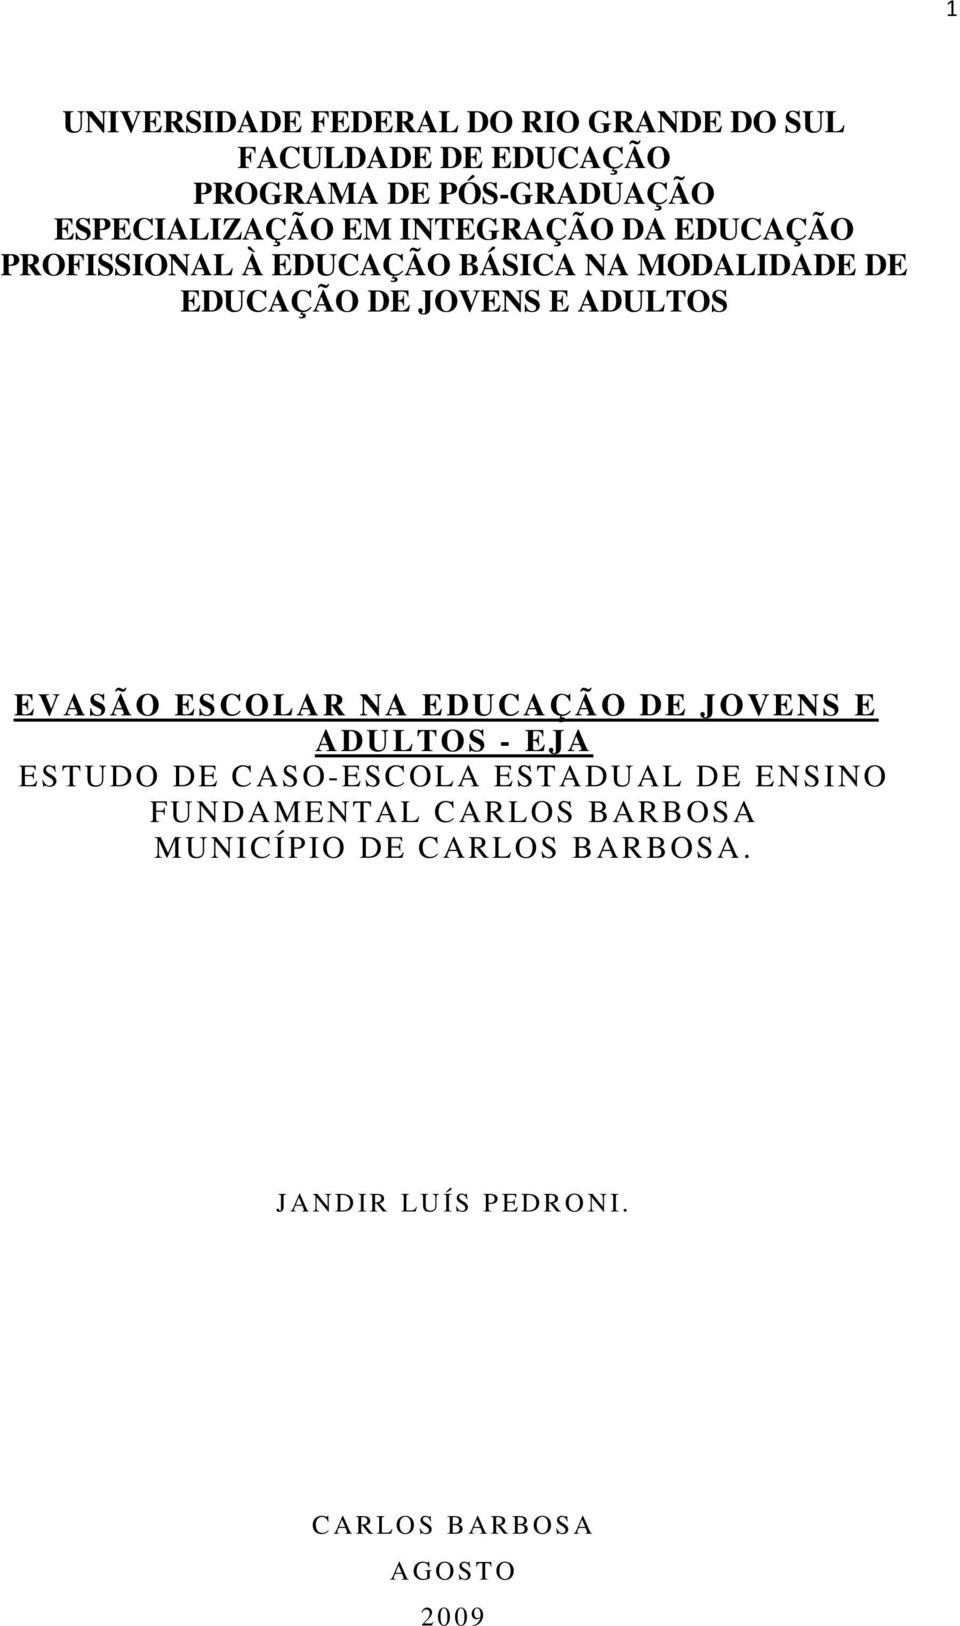 EVASÃO ESCOLAR NA EDUCAÇÃO DE JOVENS E ADULTOS - EJA ESTUDO DE CASO-ESCOLA ESTADUAL DE ENSINO FUNDAMENTAL